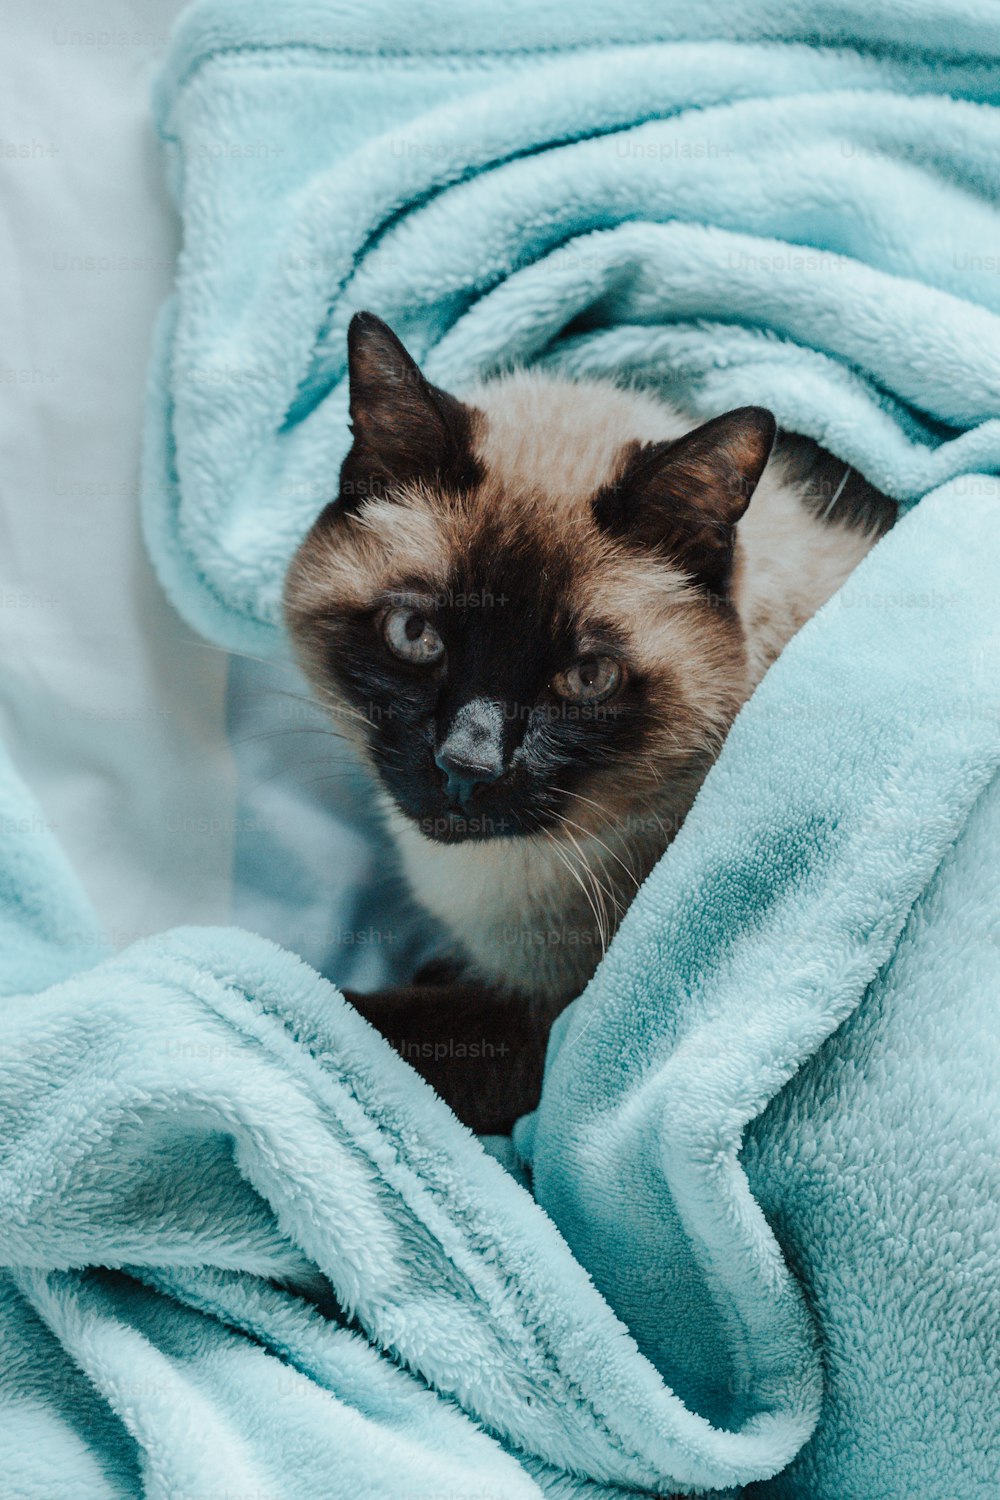 Un gato siamés sentado bajo una manta azul